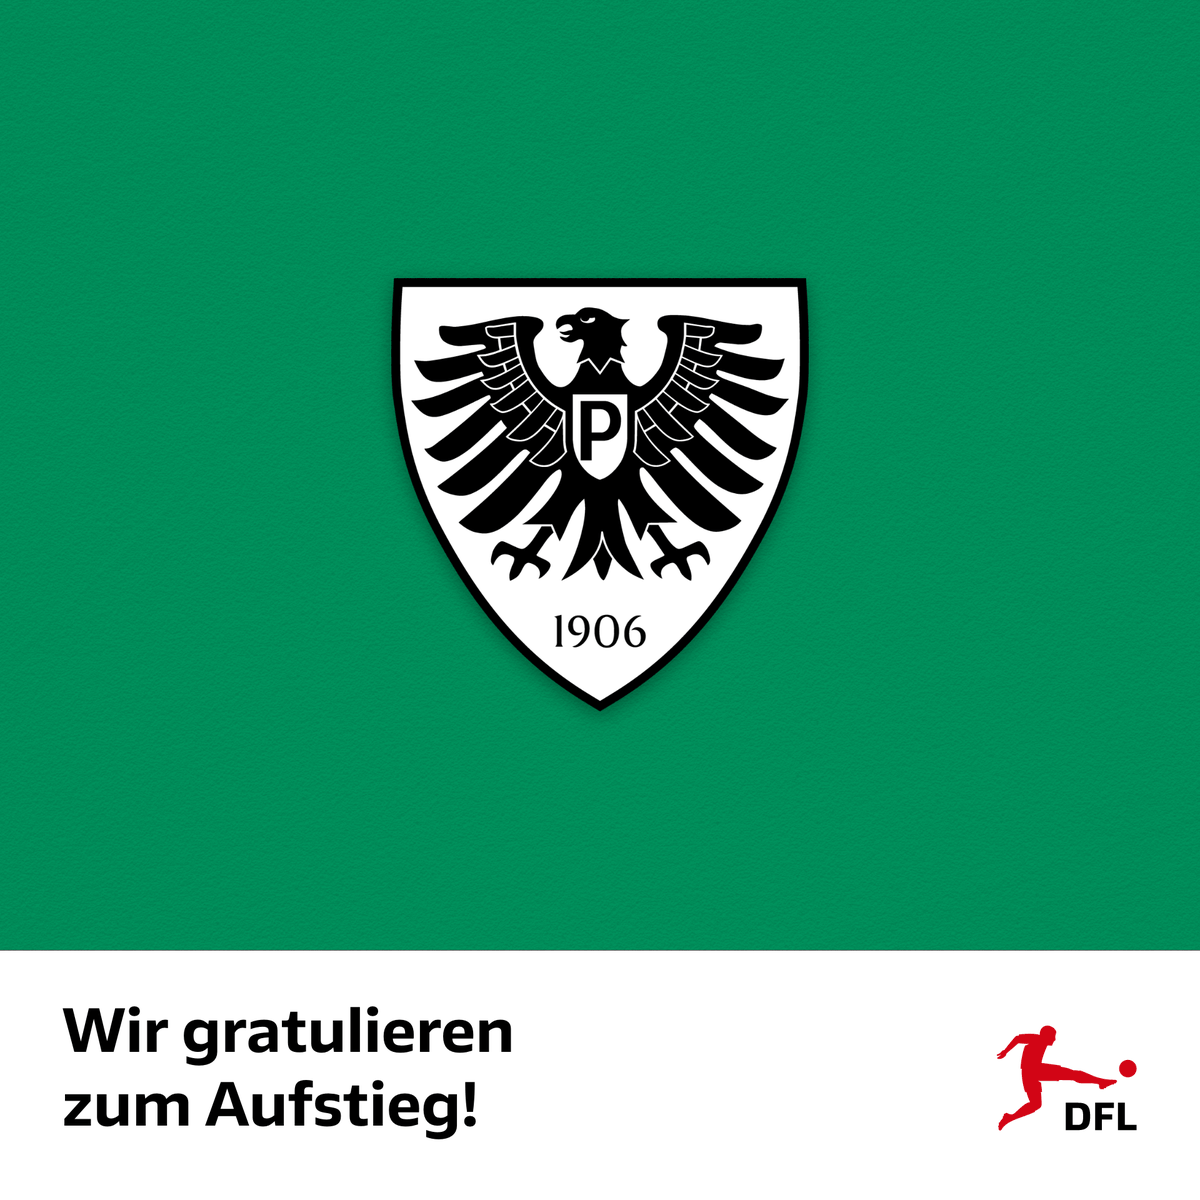 Herzlichen Glückwunsch zum Aufstieg in die 2. Bundesliga, @Preussen06! Die DFL gratuliert Preußen Münster zur Rückkehr in die zweithöchste deutsche Spielklasse sowie zum direkten Durchmarsch aus der Regionalliga West ➡️ dfl.de/de/aktuelles/g…